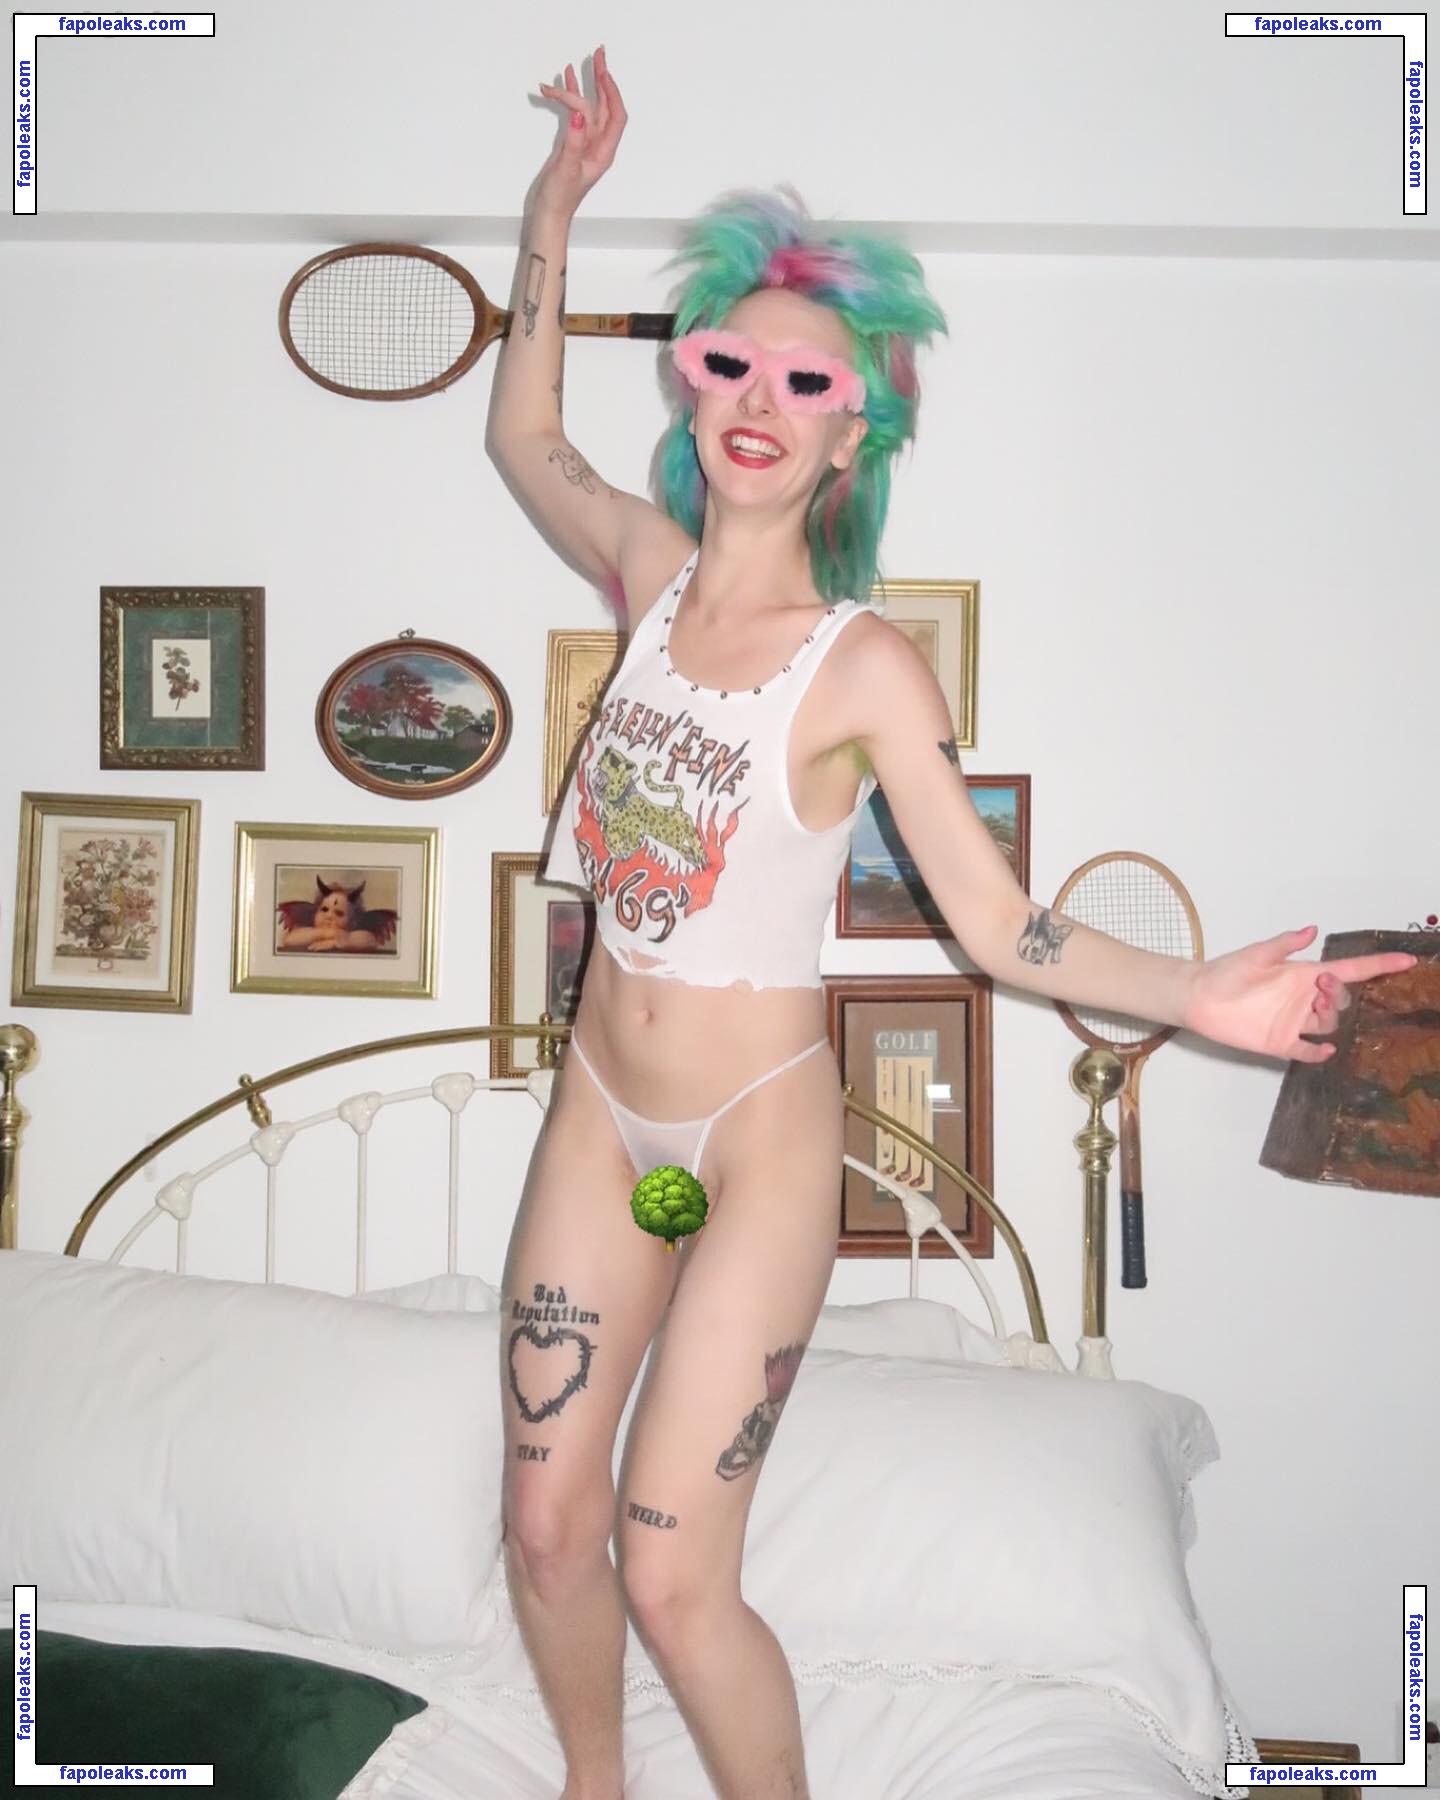 Morgan Presley / morganpresleyxo nude photo #0004 from OnlyFans